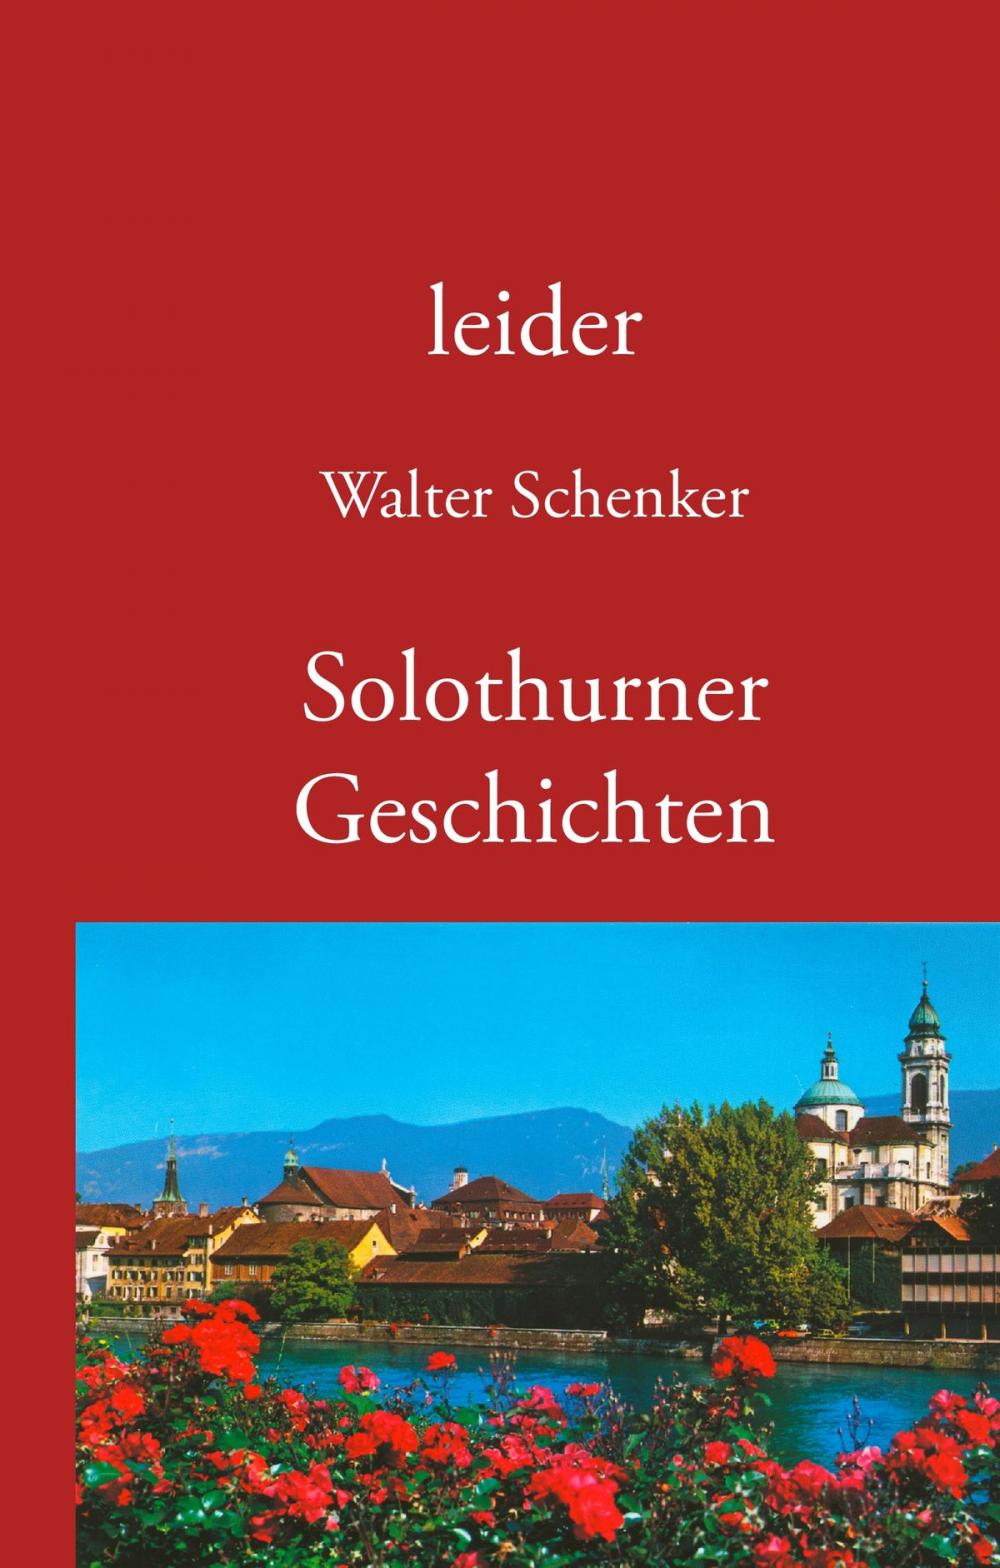 Big bigCover of leider/Solothurner Geschichten